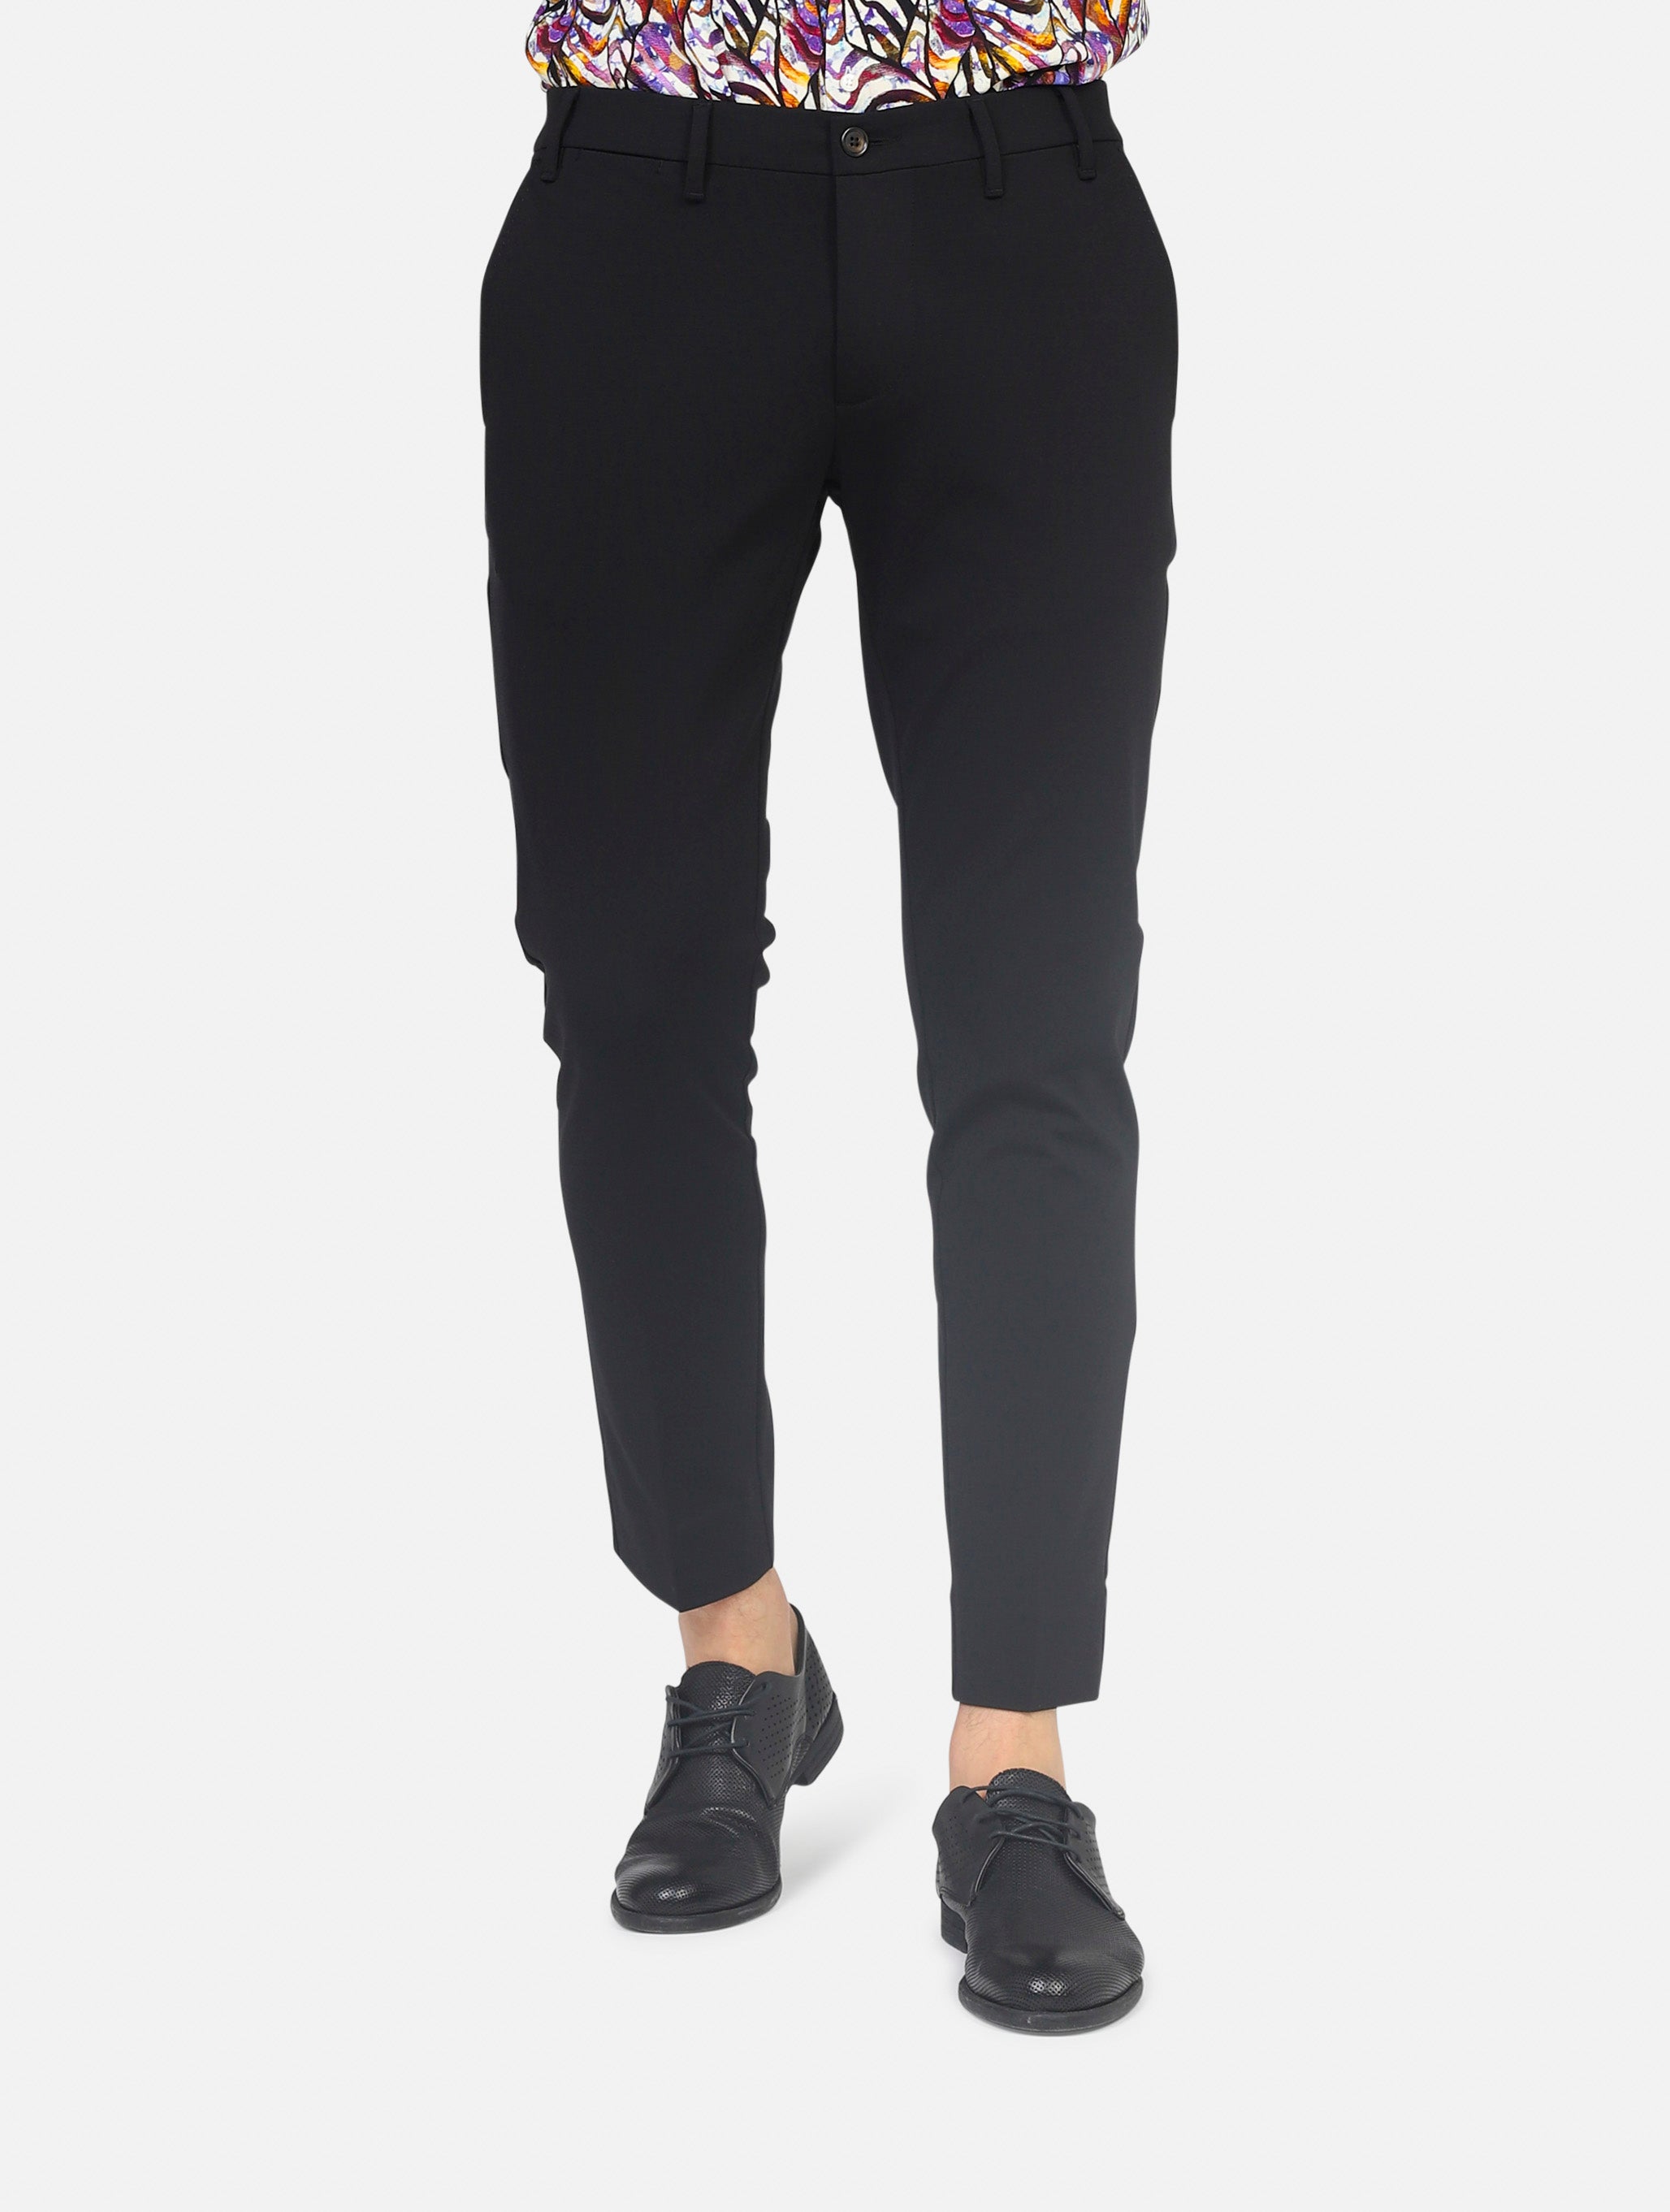 Pantalone why not brand  nero uomo 